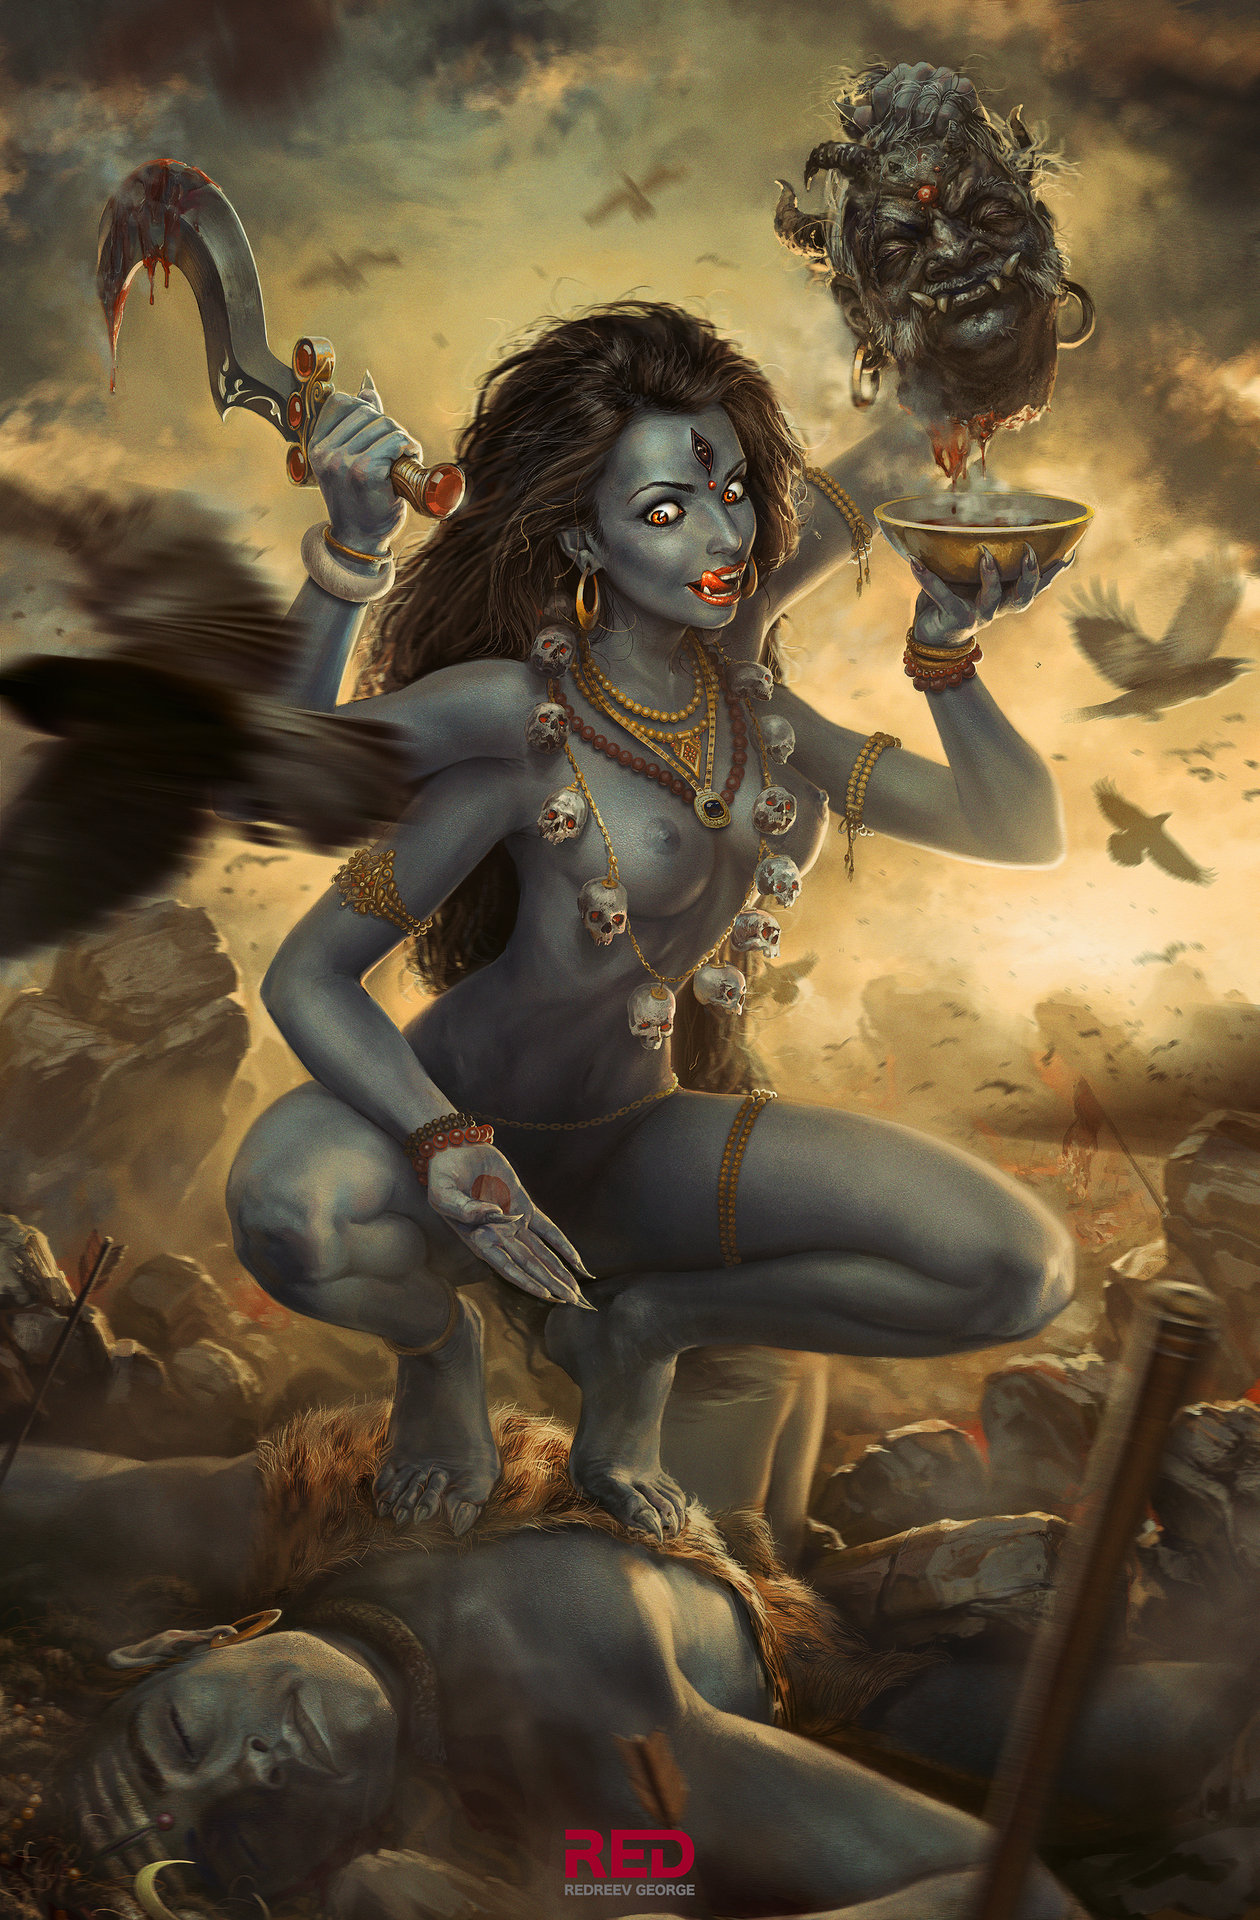 Nữ thần Kali – Vị thần quyền lực và tàn bạo bậc nhất trong thế giới thần thoại - Ảnh 1.